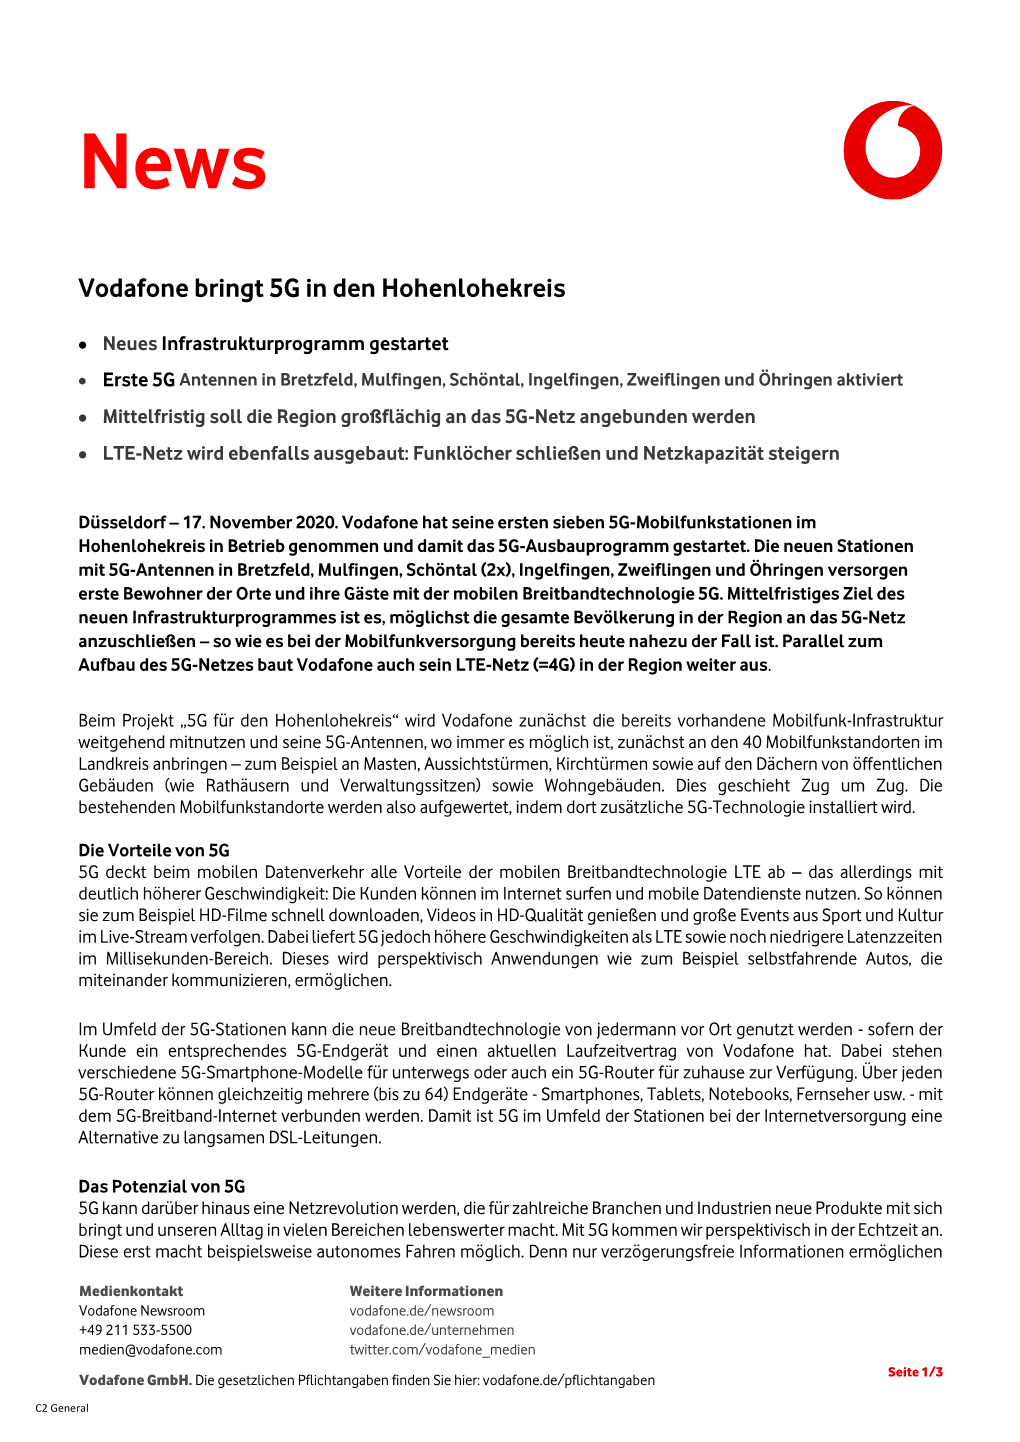 Vodafone Bringt 5G in Den Hohenlohekreis